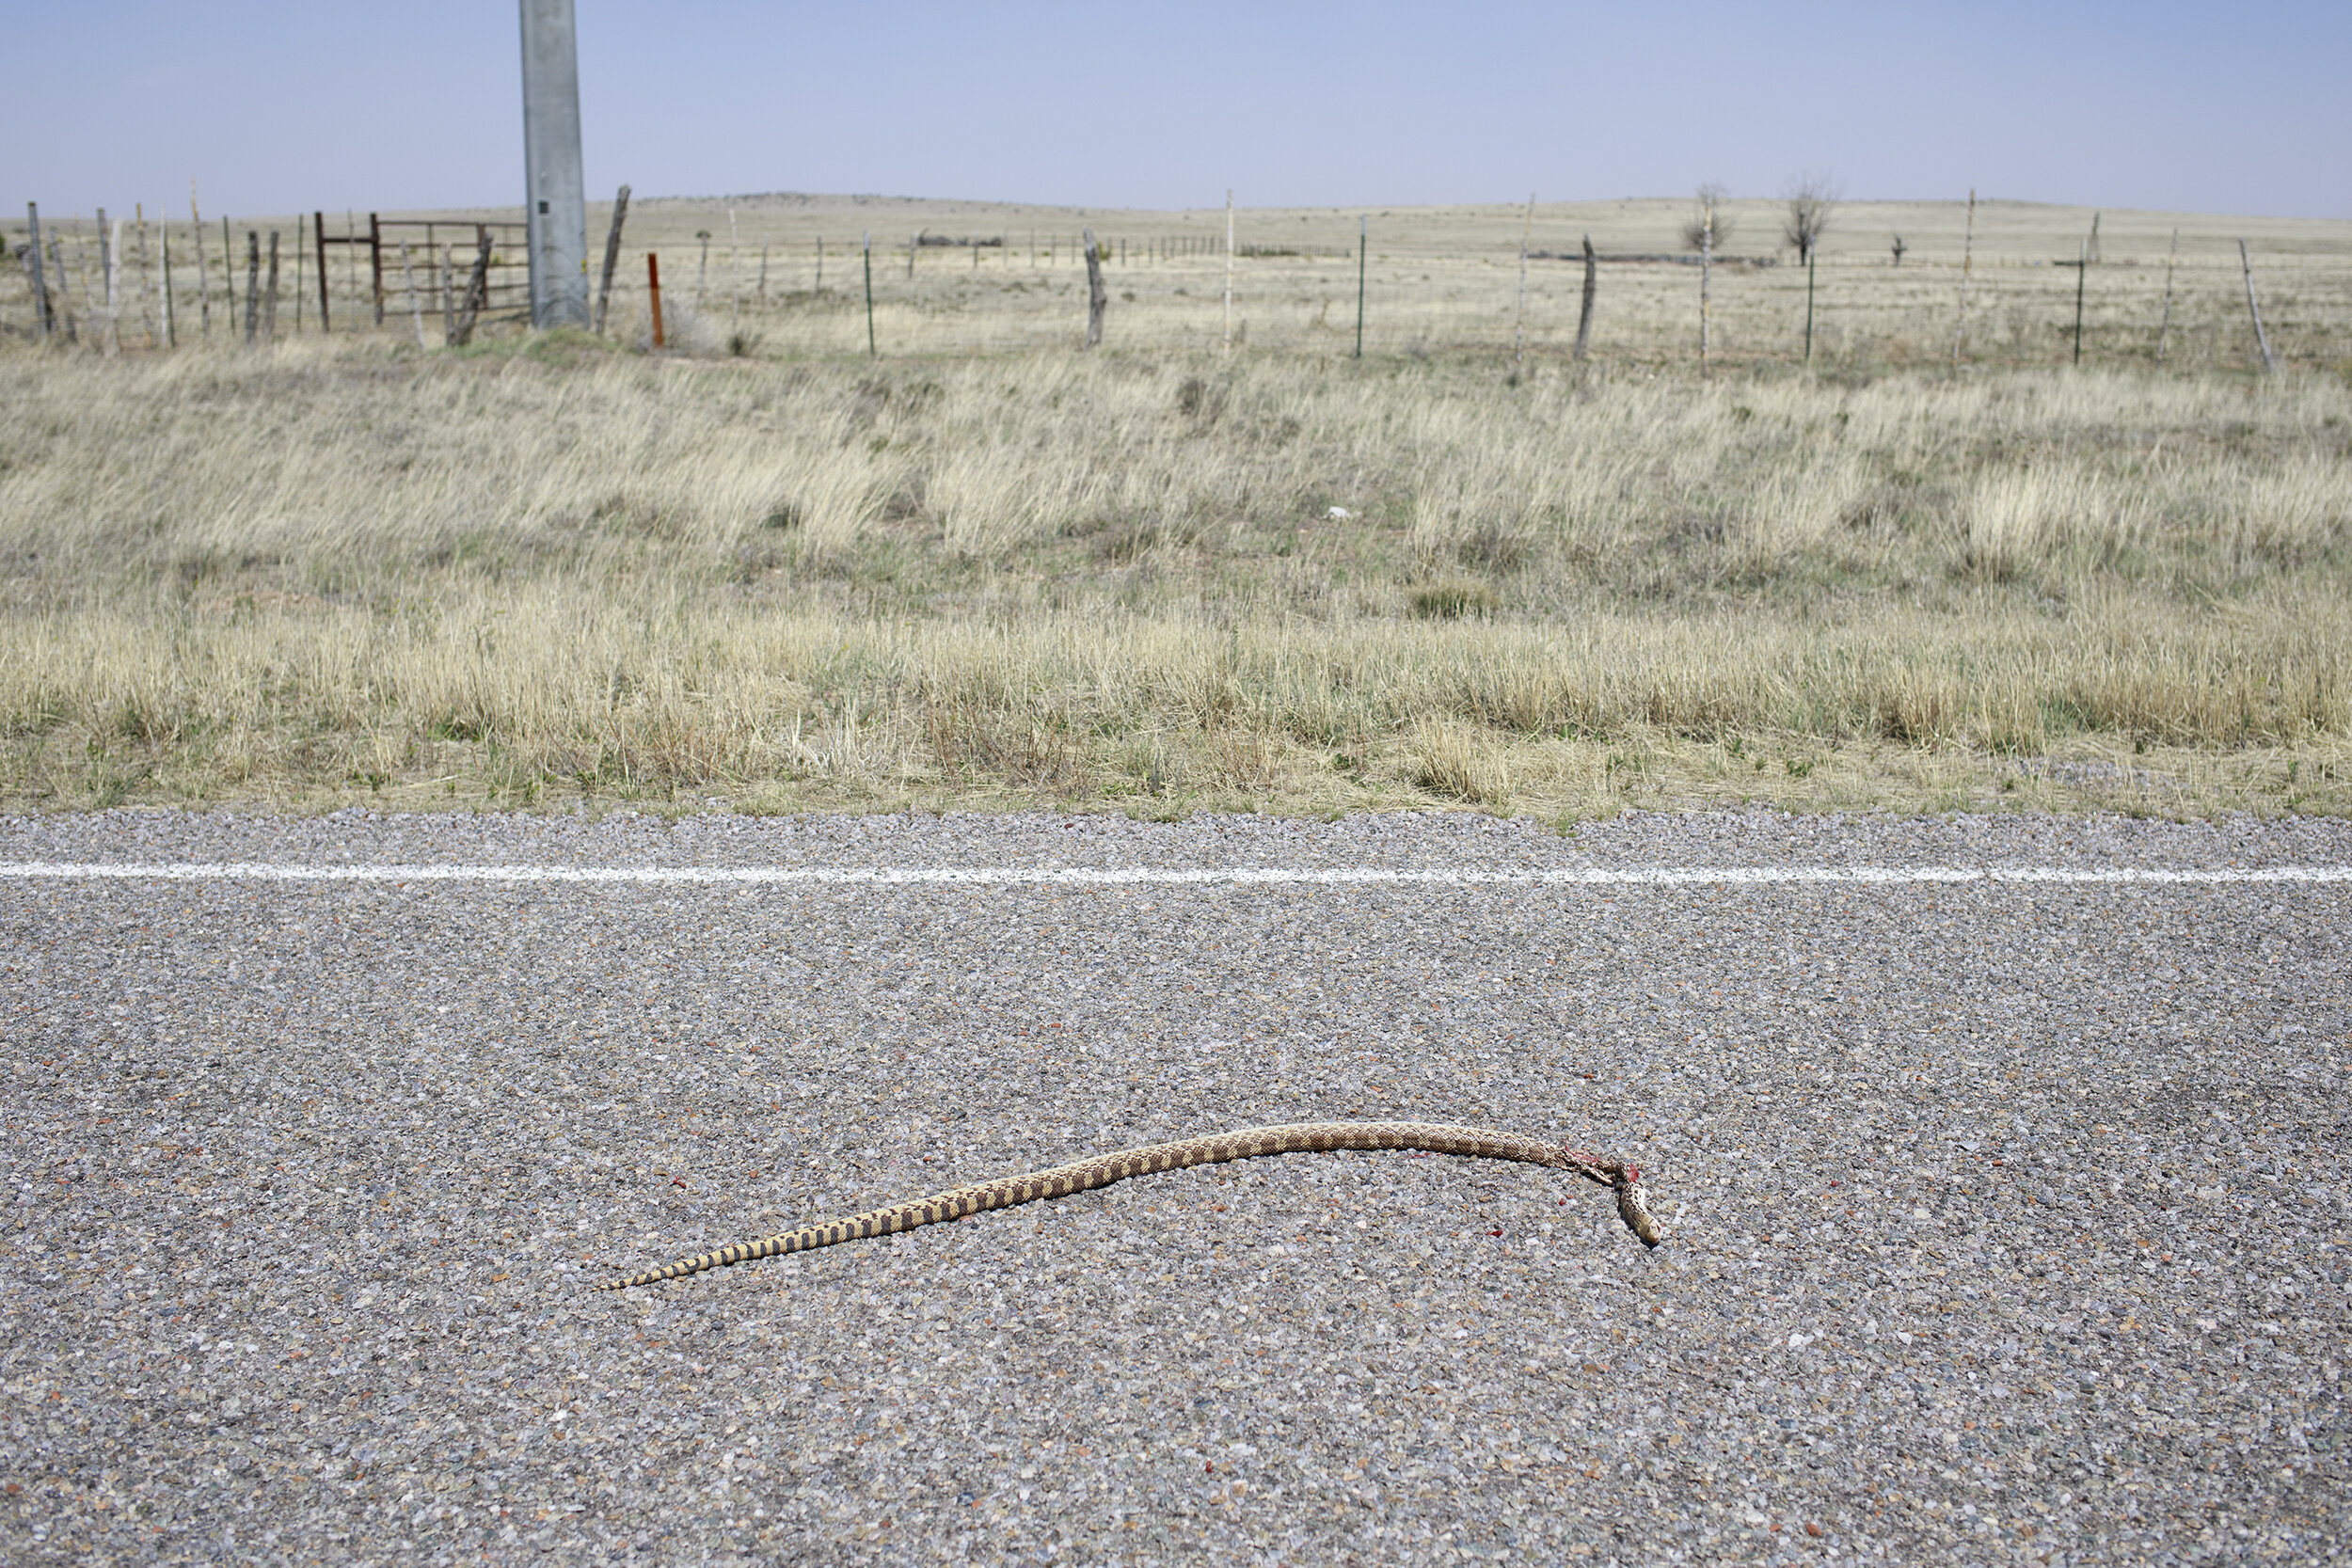  Roadkill, New Mexico.  